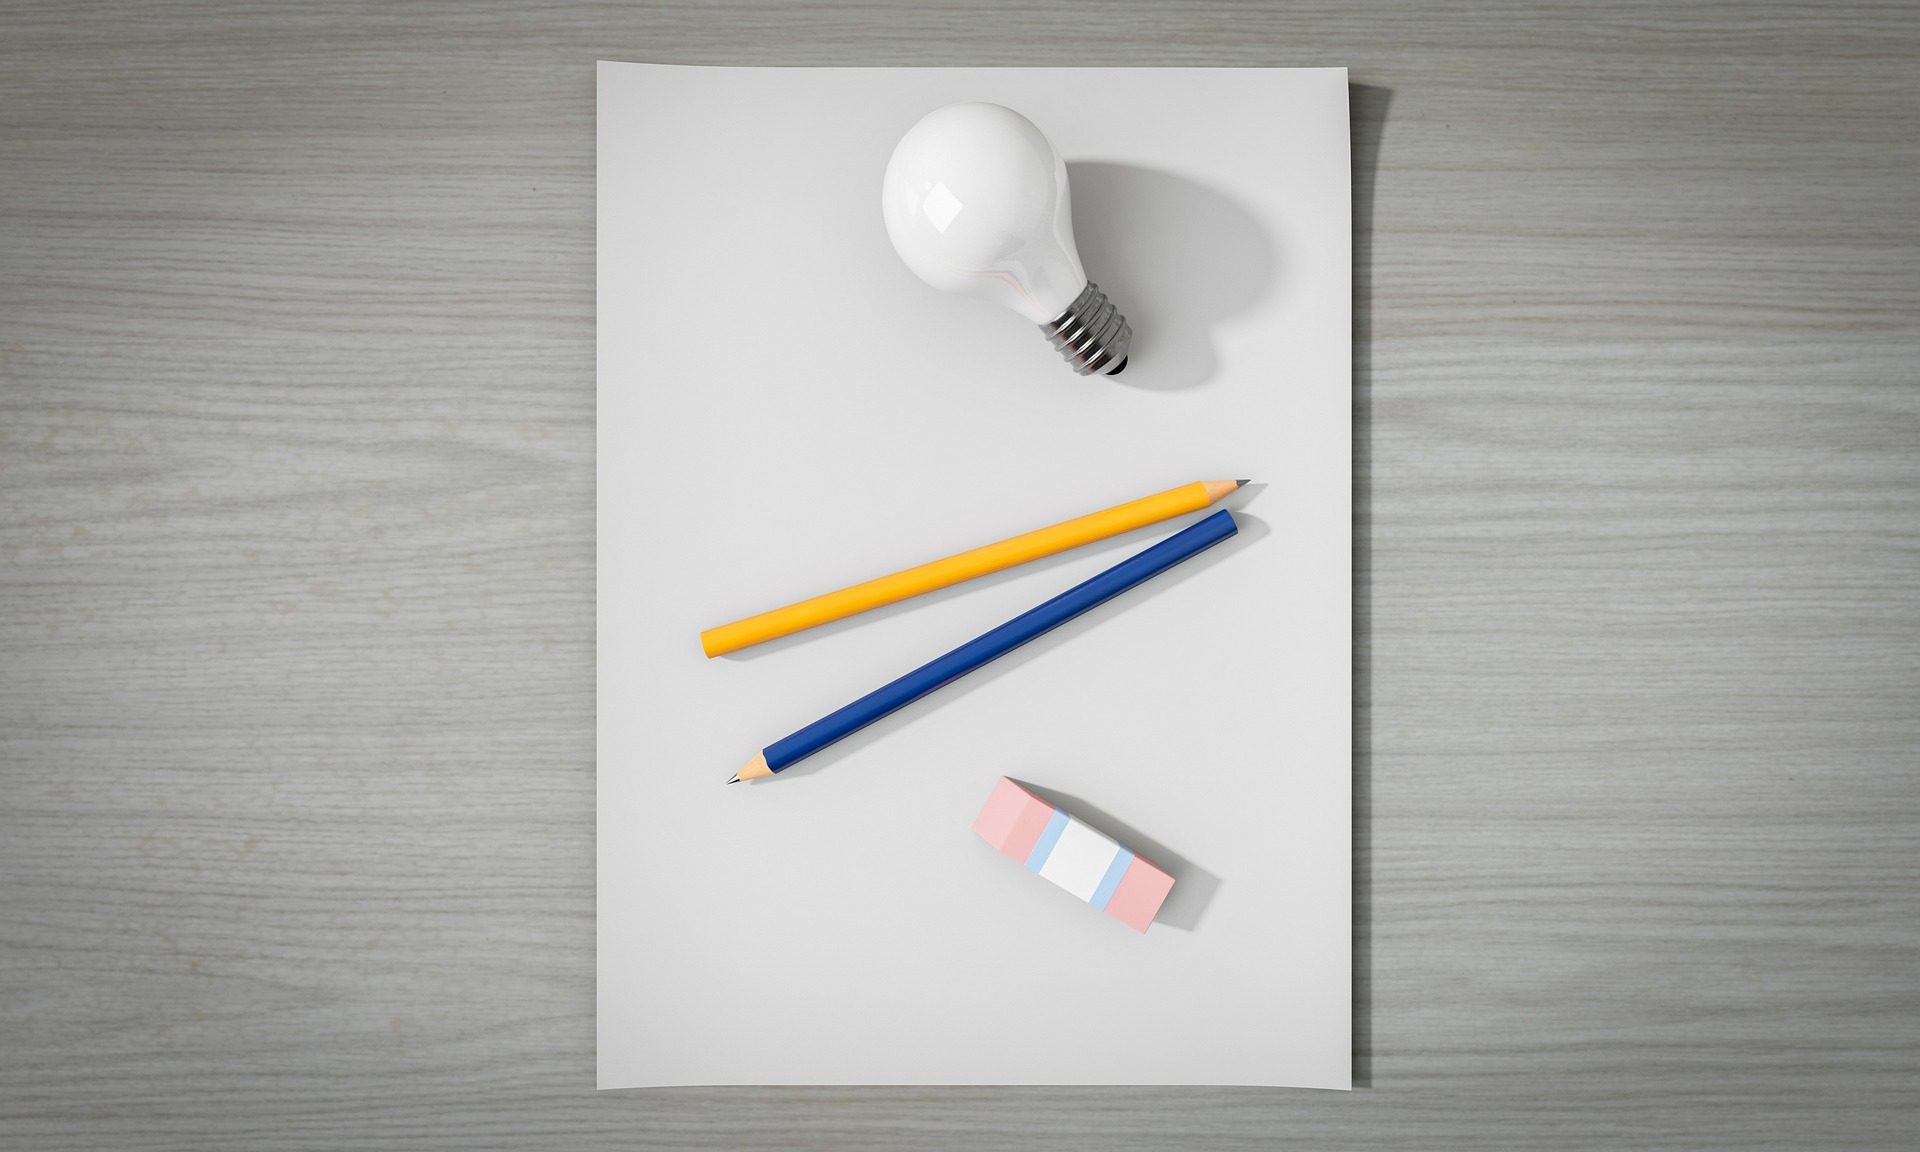 Verschiedene Gegenstände auf einem Blatt Papier: Ein Glühbirne, 2 Bleistifte, 1 Radiergummi.